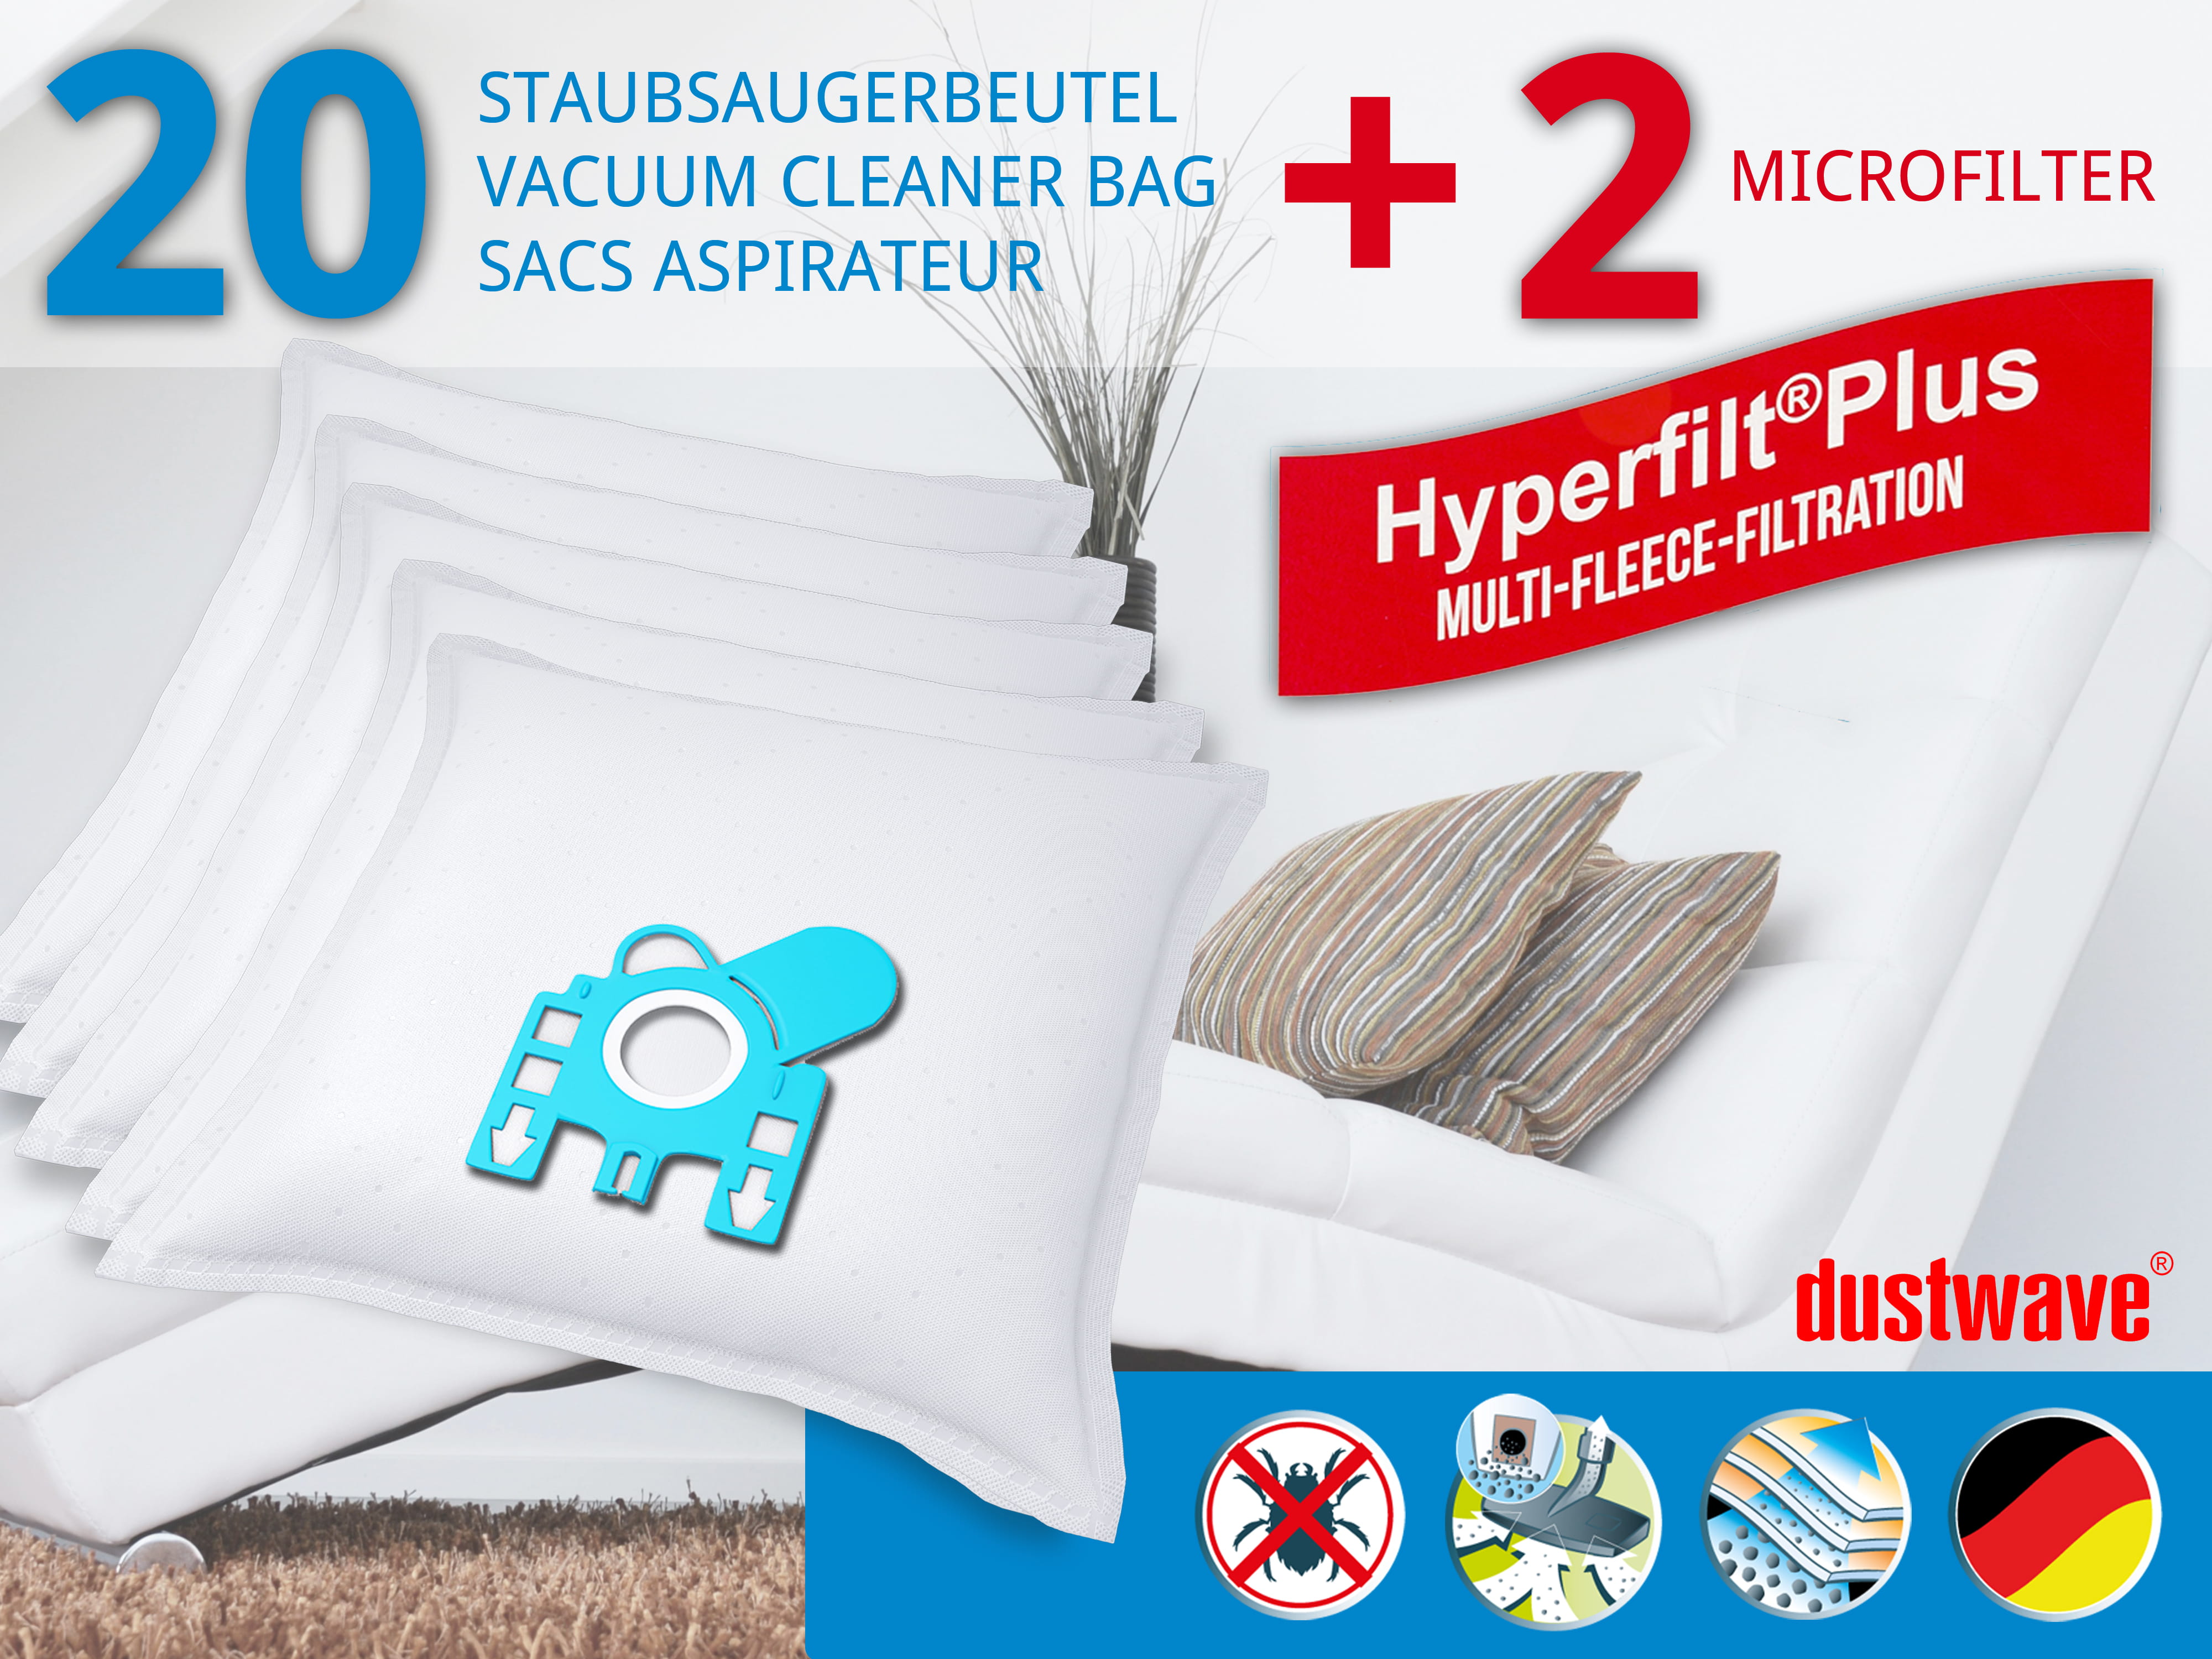 Dustwave® 20 Staubsaugerbeutel für Miele S7161 / S 7161 - hocheffizient, mehrlagiges Mikrovlies mit Hygieneverschluss - Made in Germany